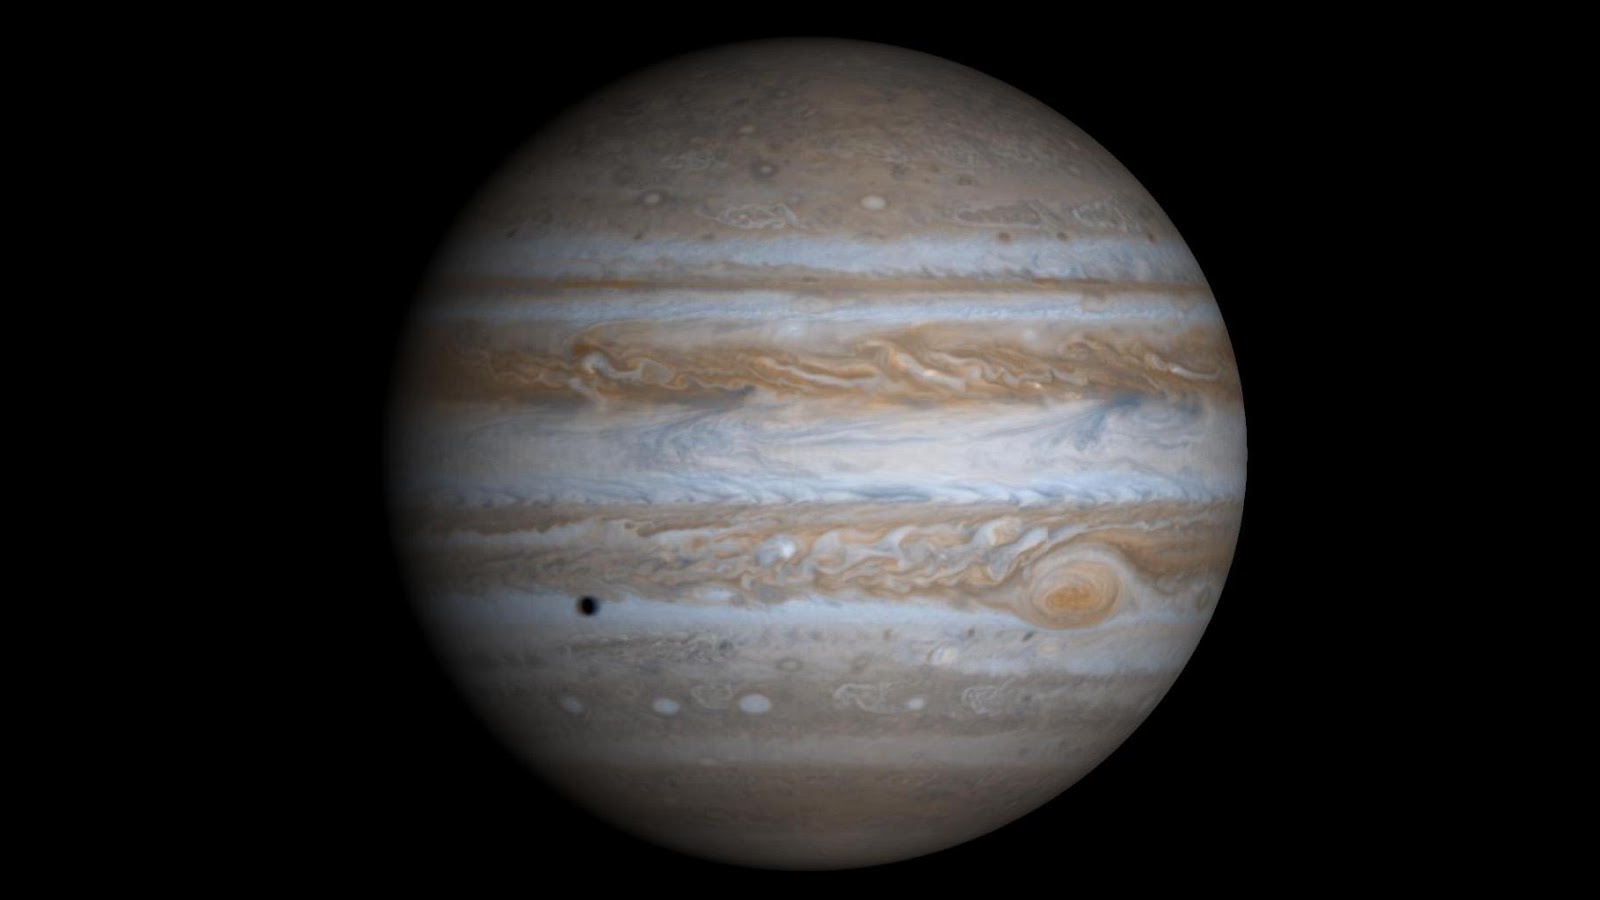 Зоны и пояса Юпитера